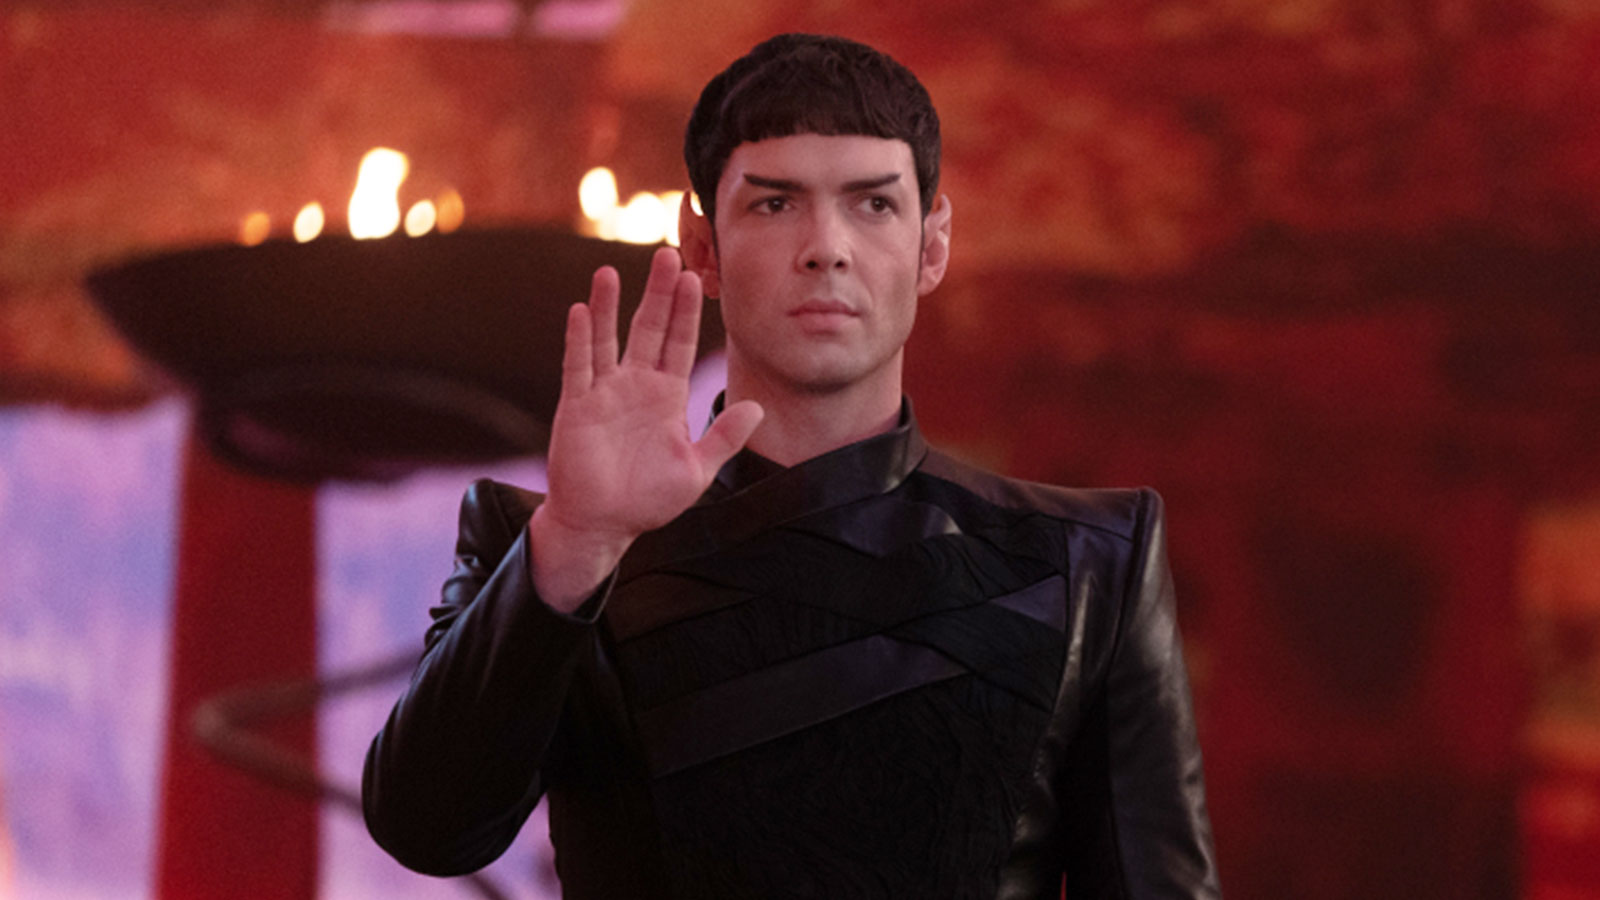 Star Trek: Strange New Worlds Episode 5 “Spock Amok” trailer + new photos